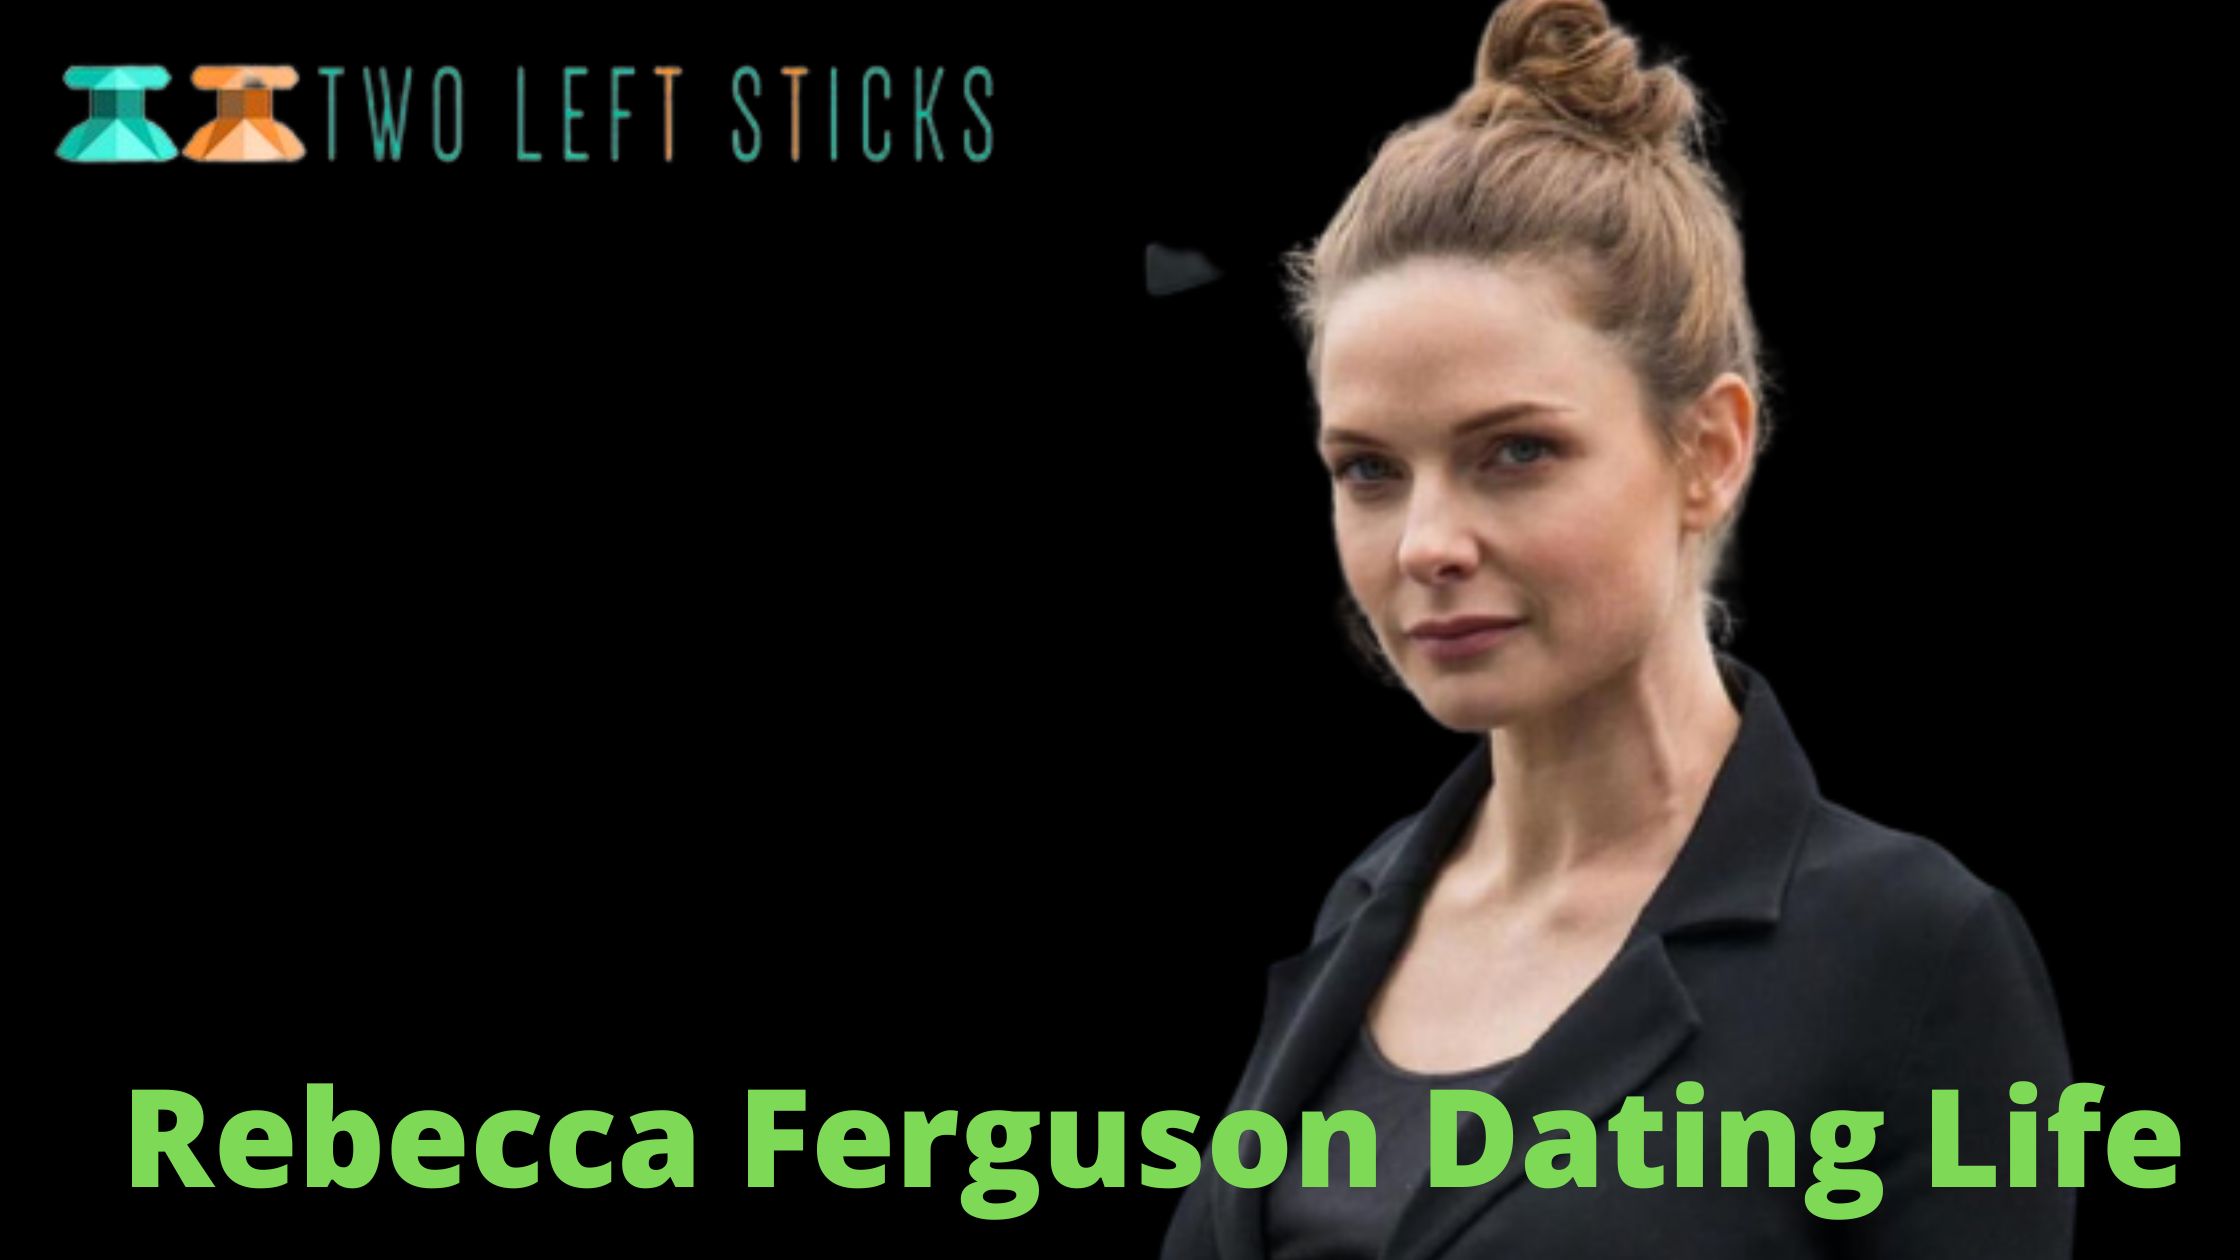 Rebecca-Ferguson-Dating-Life-twoleftsticks(1)